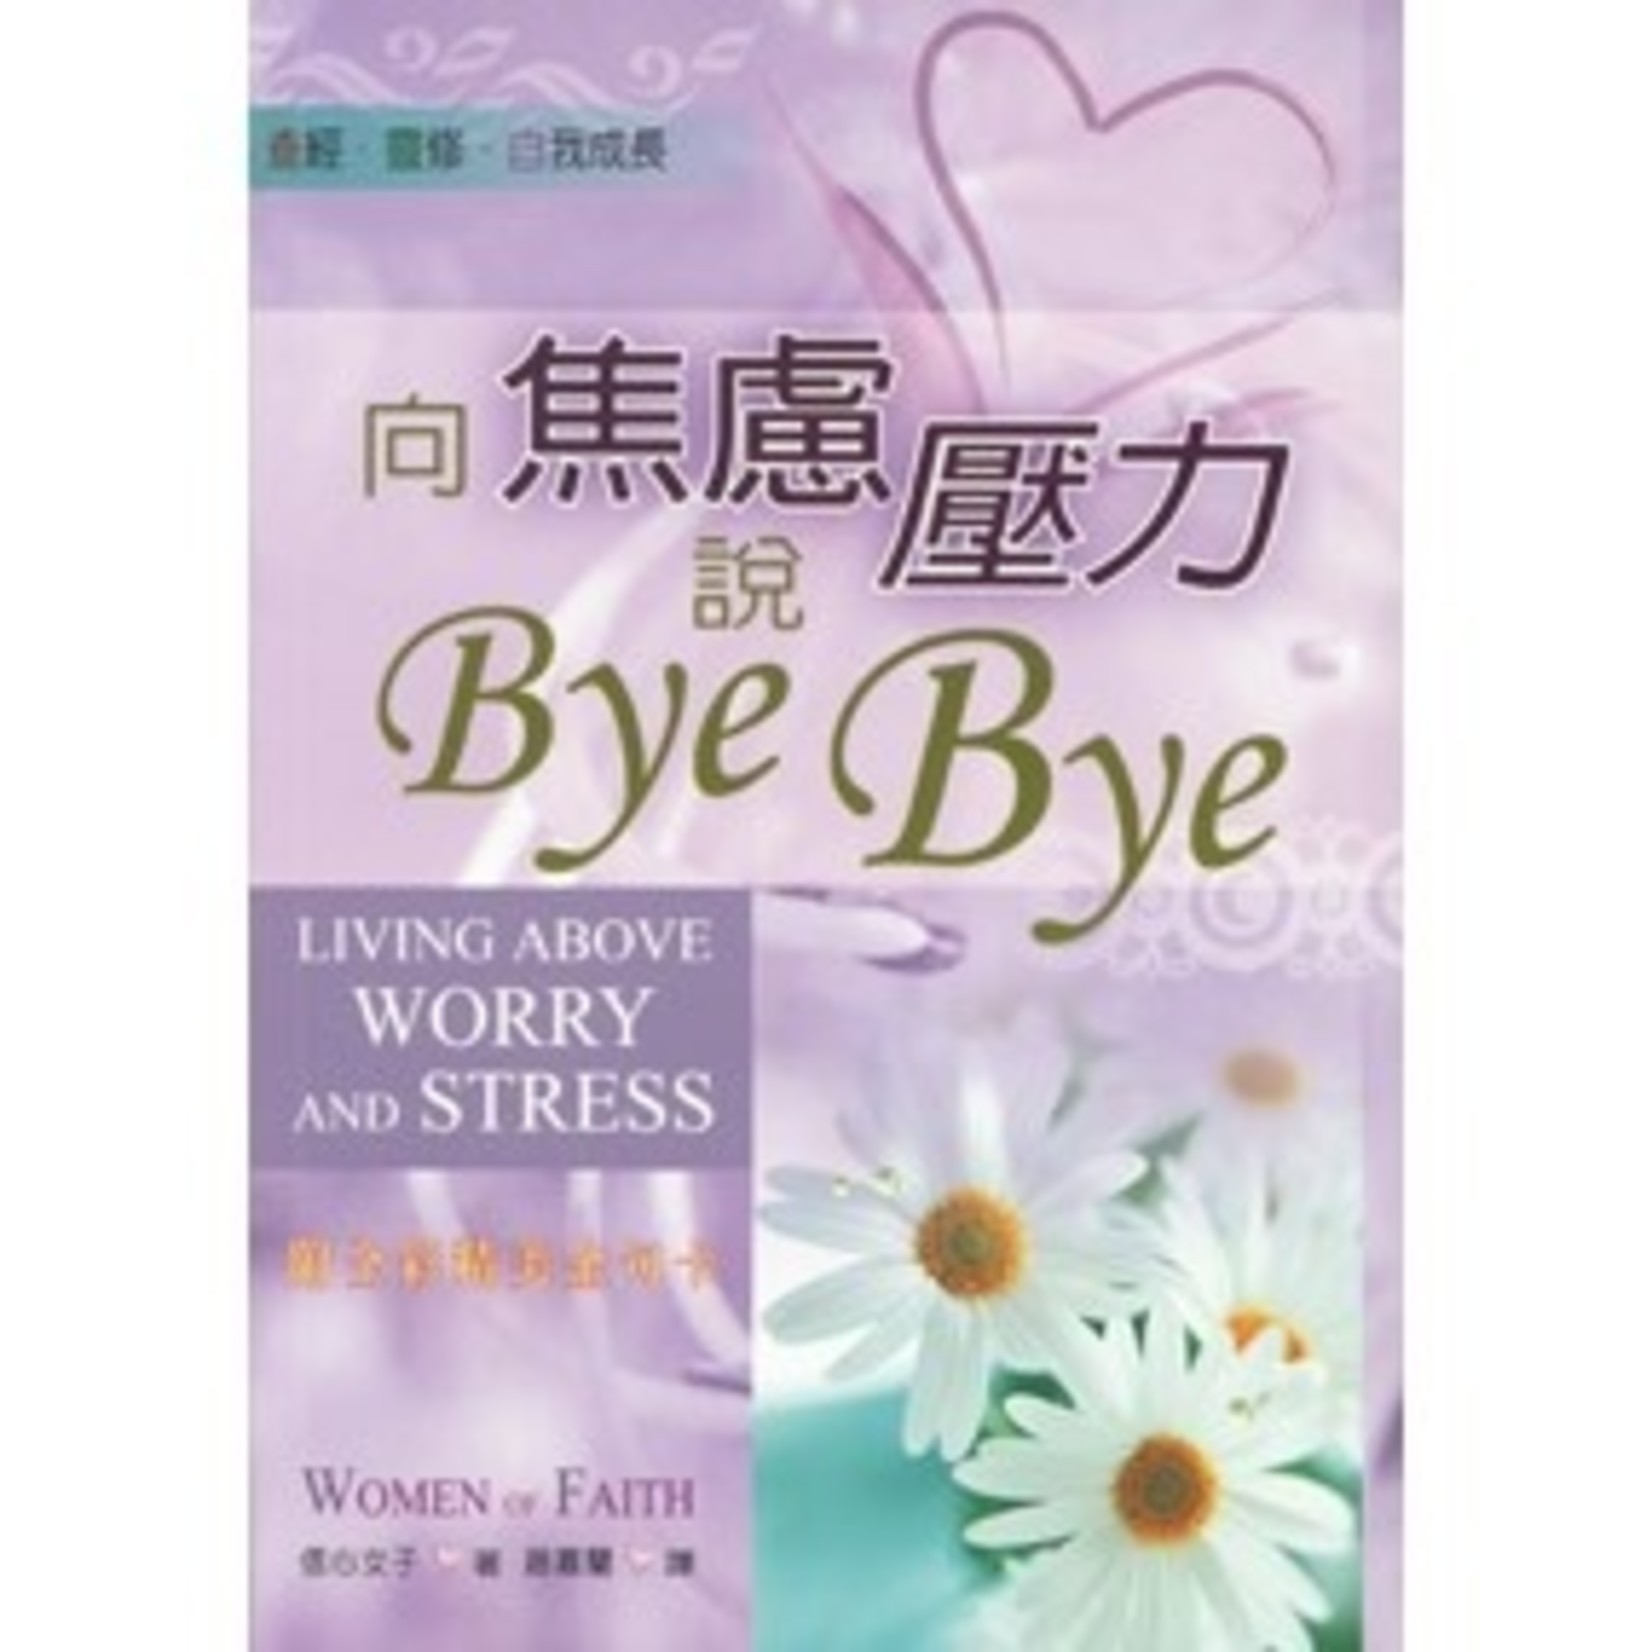 聖經資源中心 CCLM 向焦慮壓力說Bye Bye!  | Living Above Worry And Stress